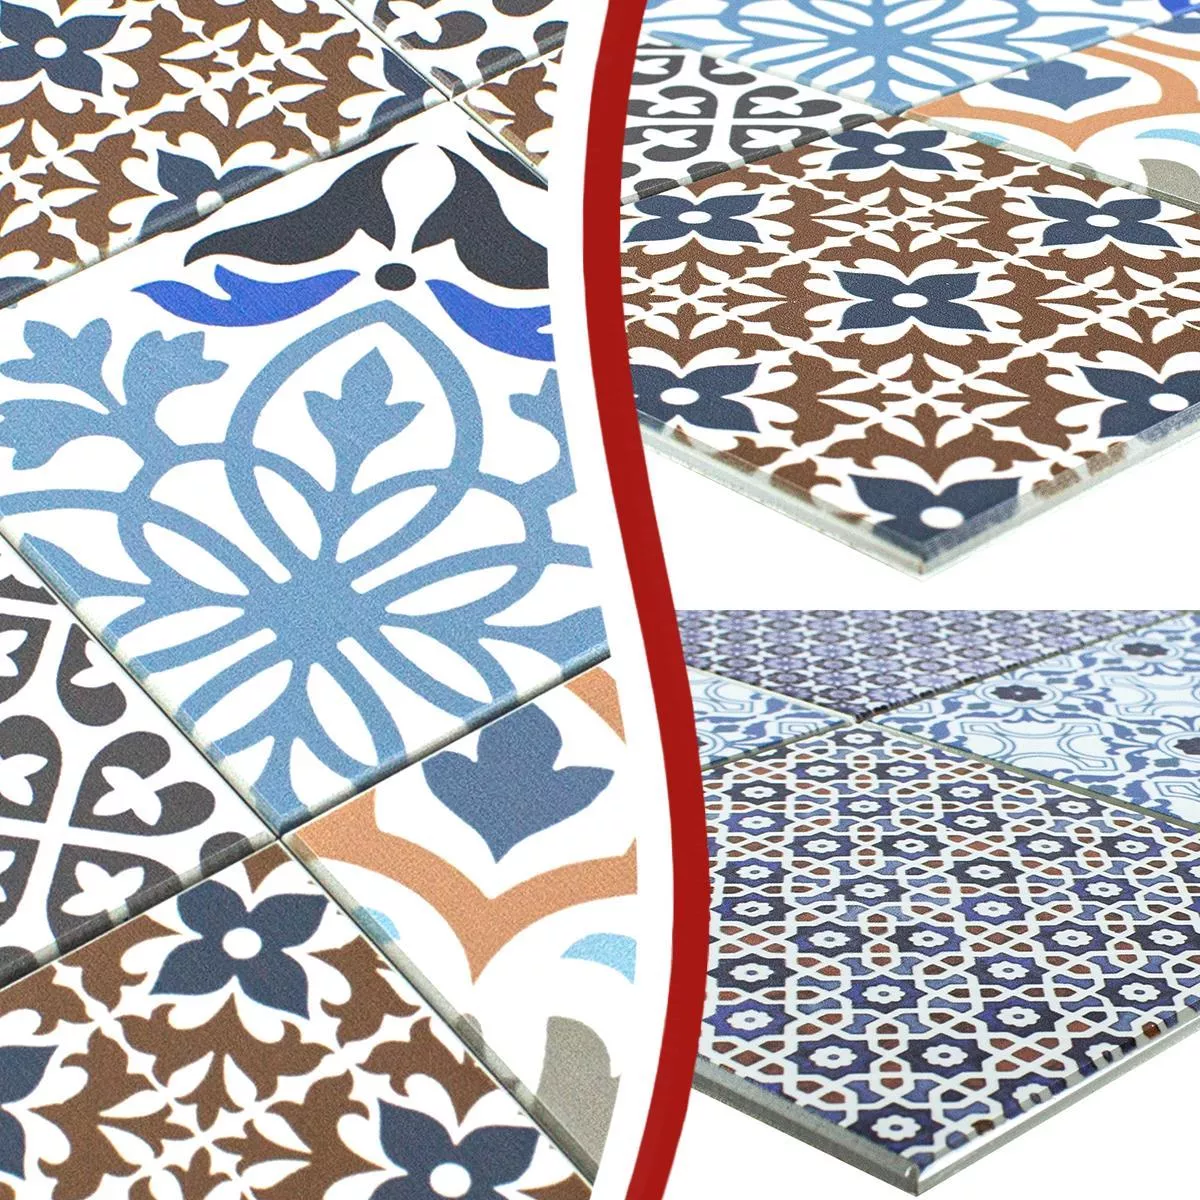 Vinilo Azulejos De Mosaico Autoadhesivo Poznan